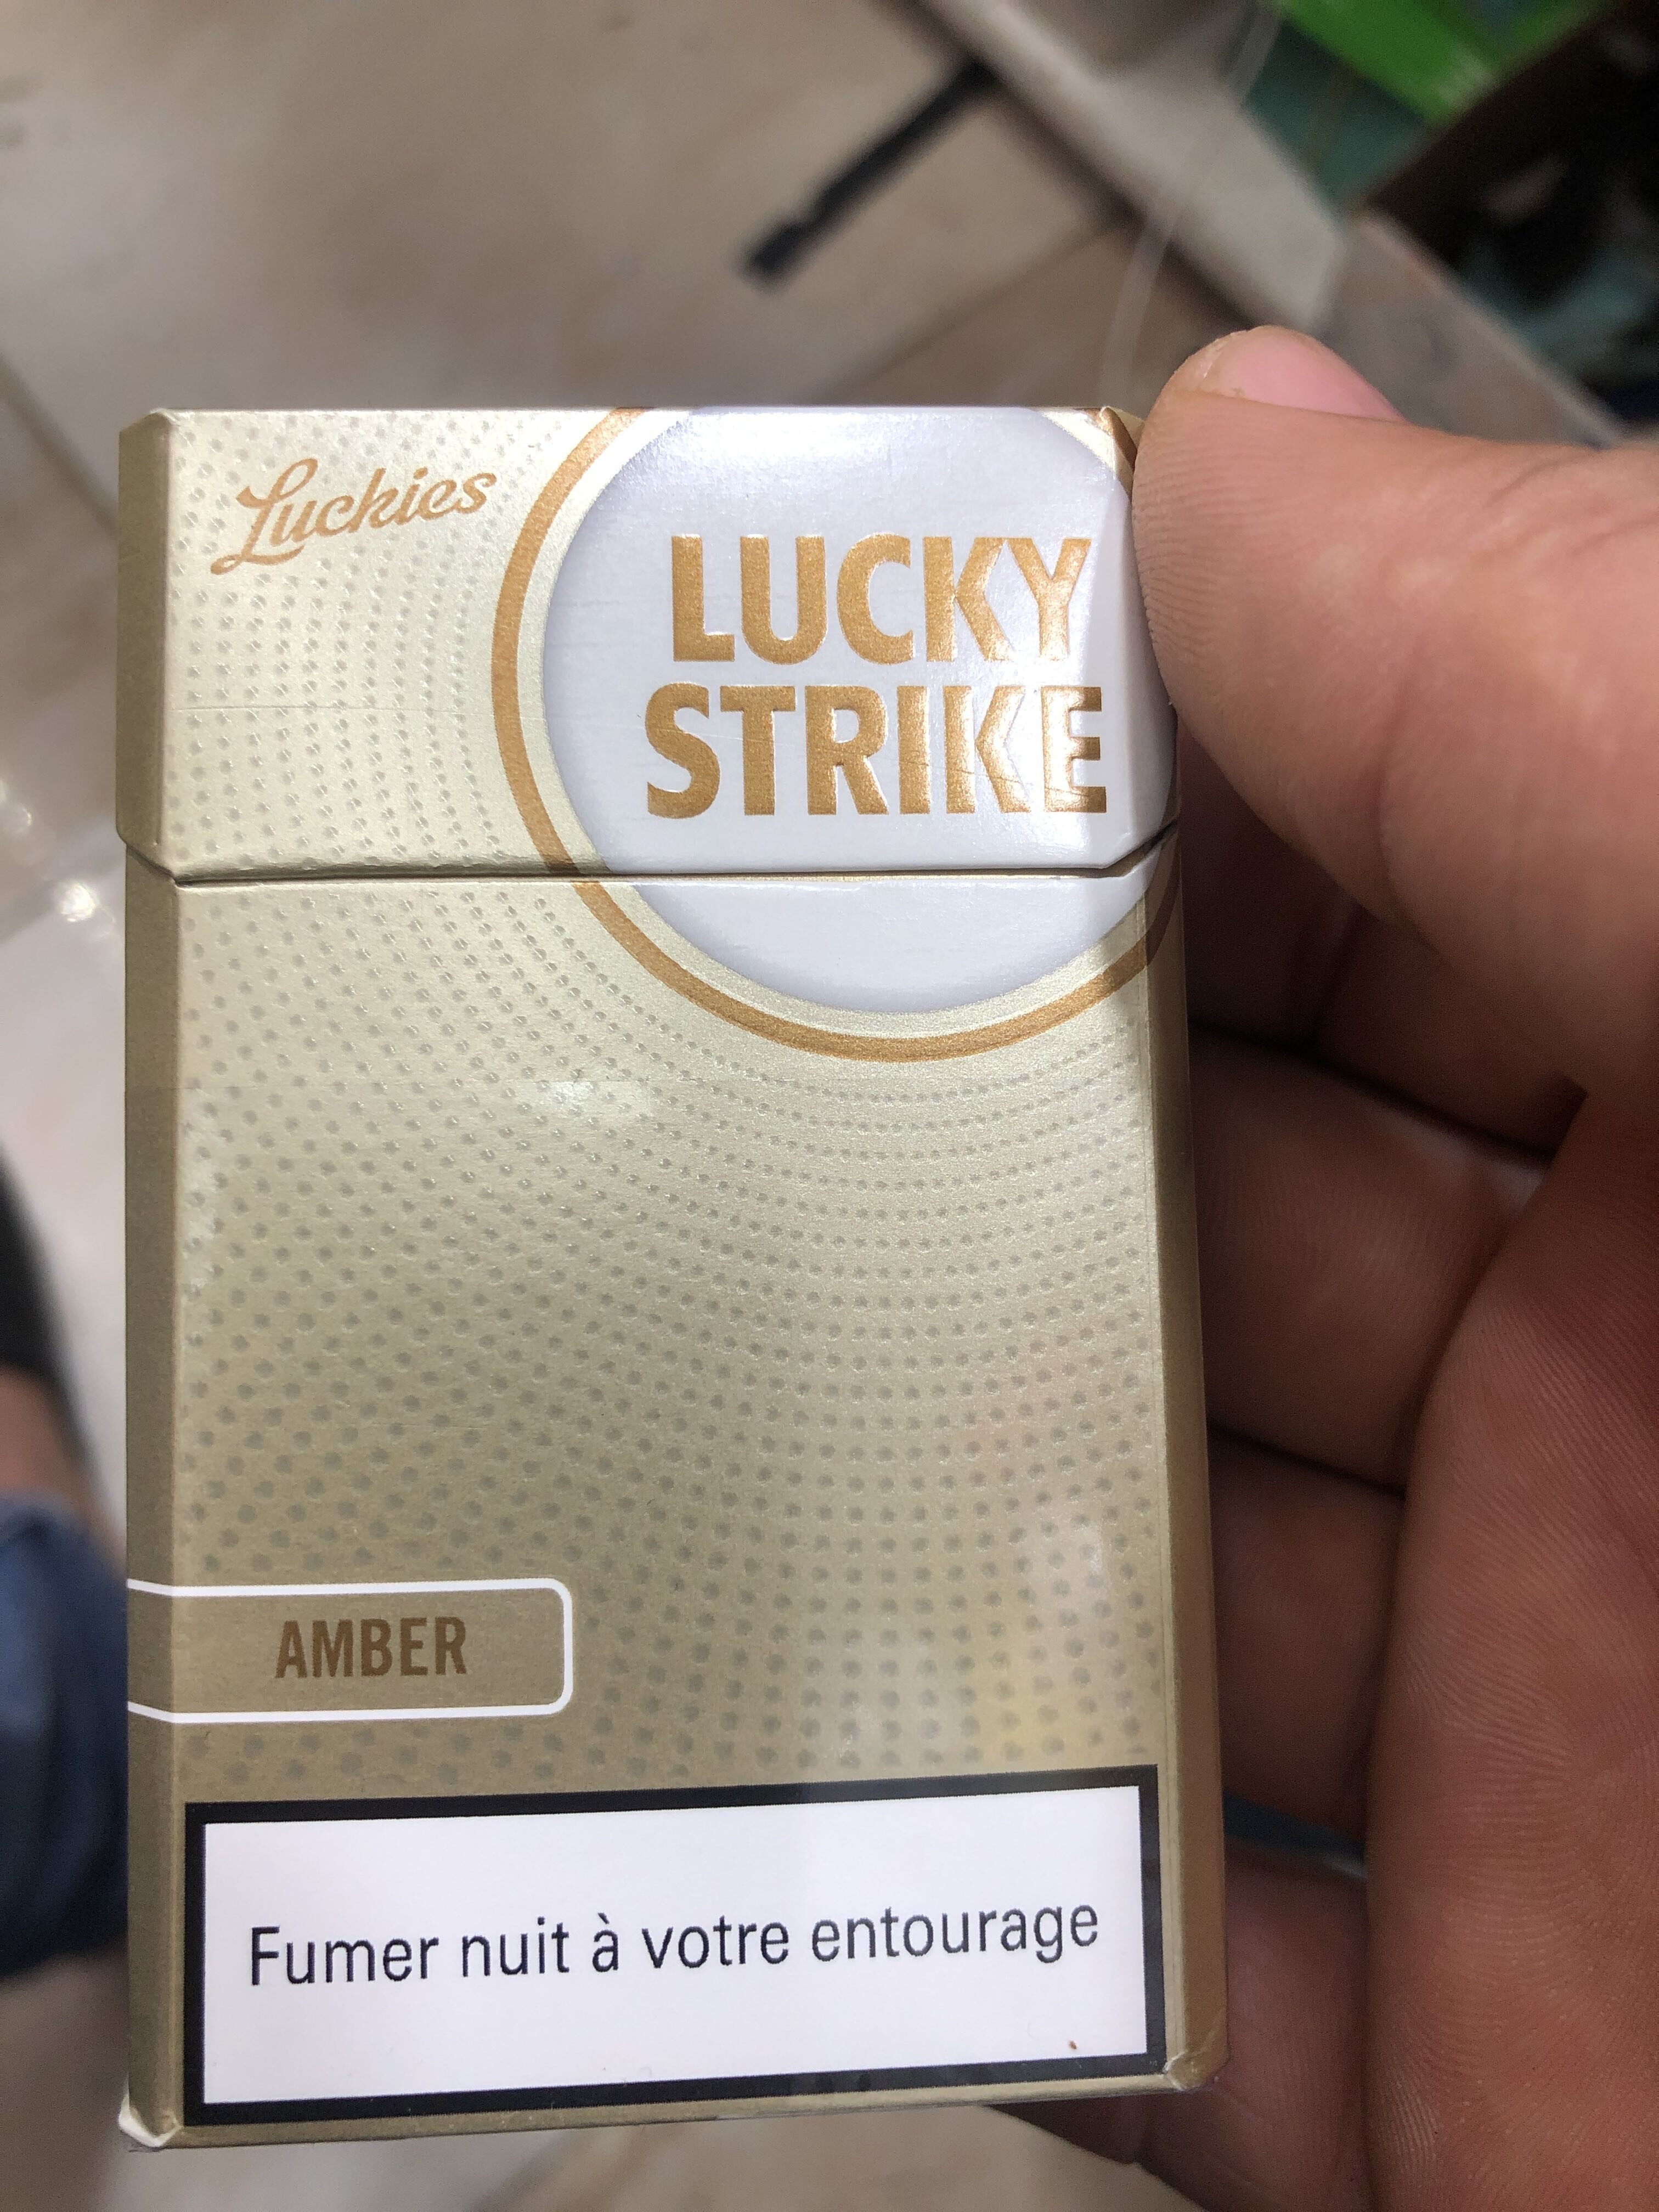 lucky strike - Produto - en